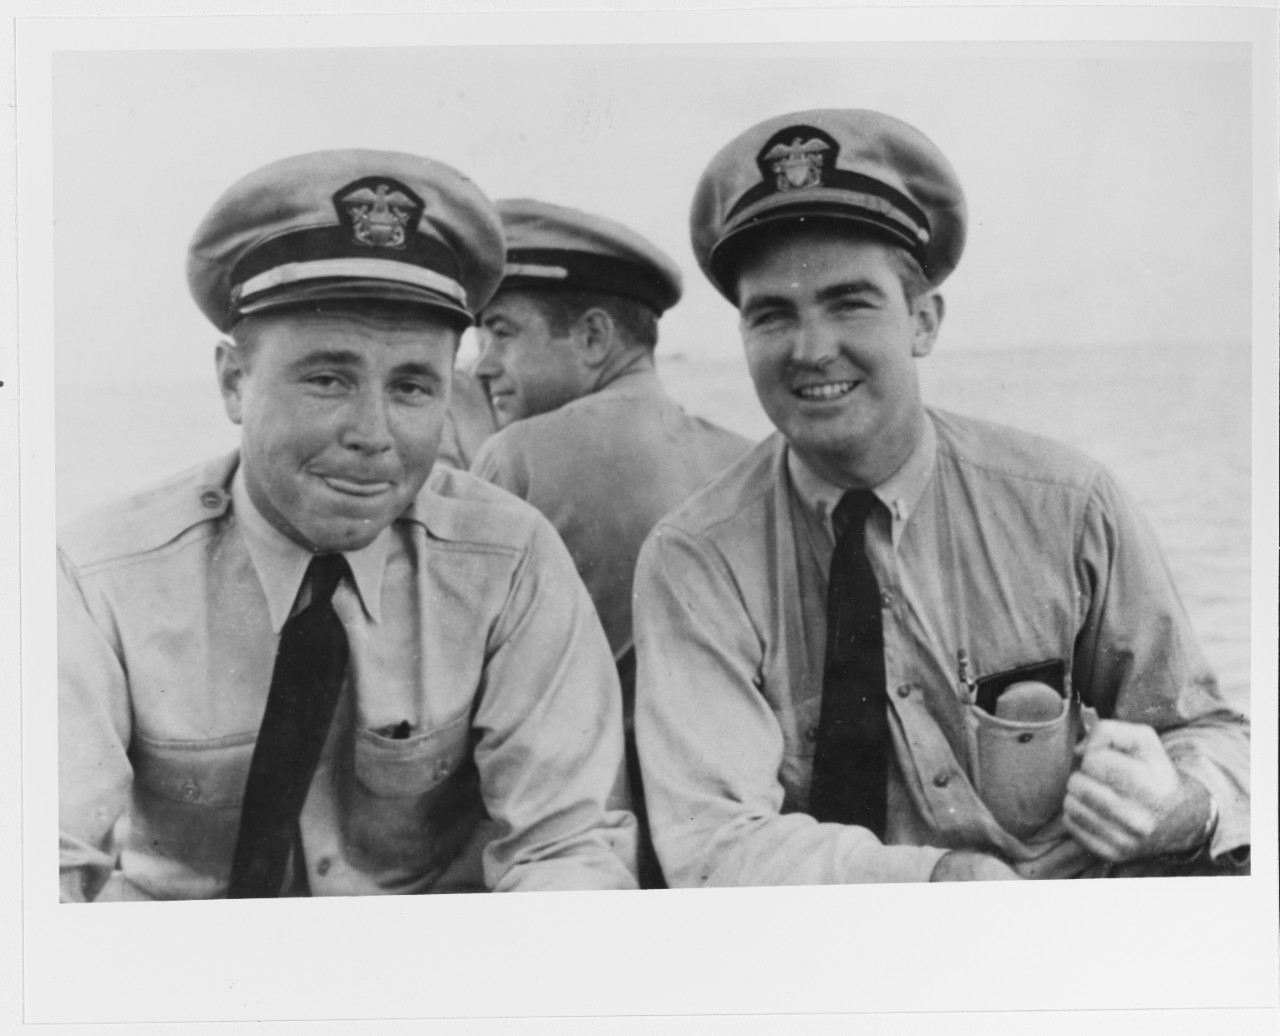 Robert "Buz" Lefevre (left) and Walter G. Winslow